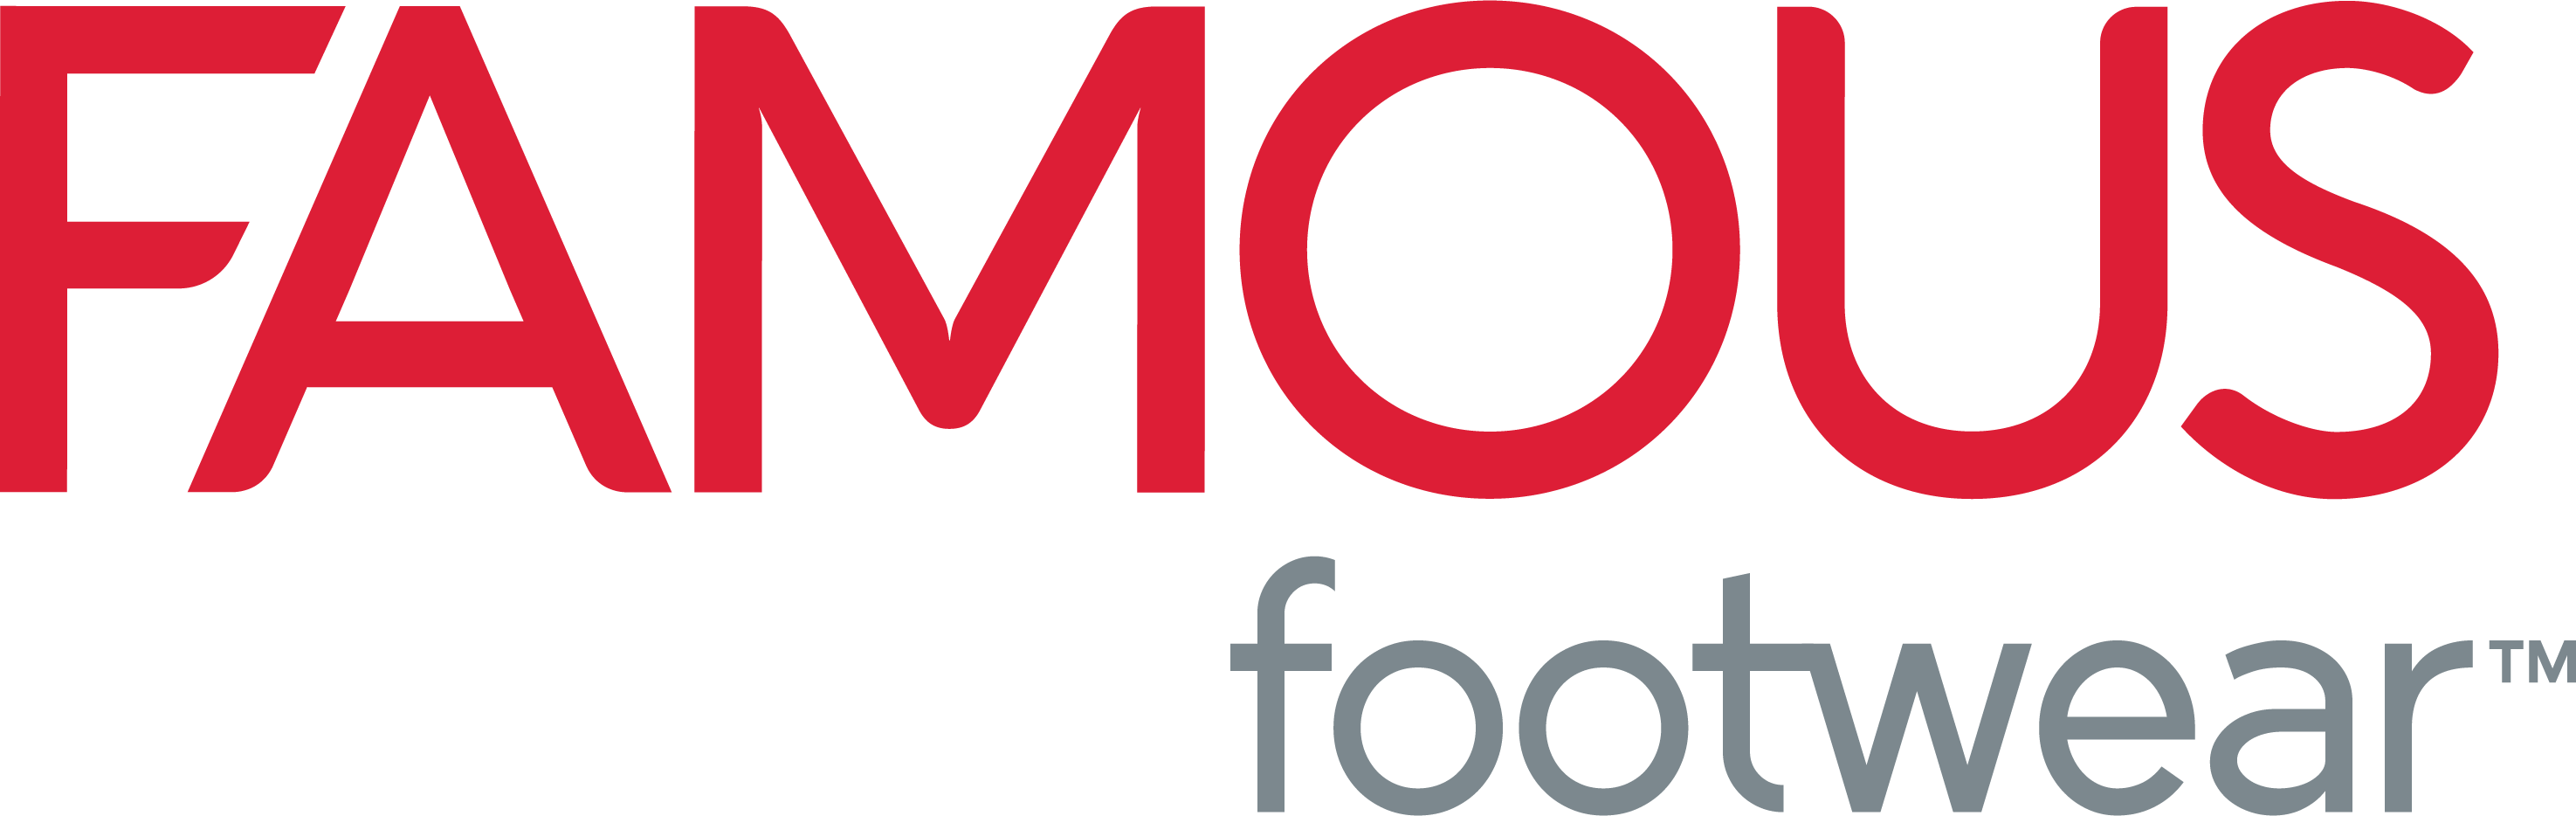 Famous Footwear logo image